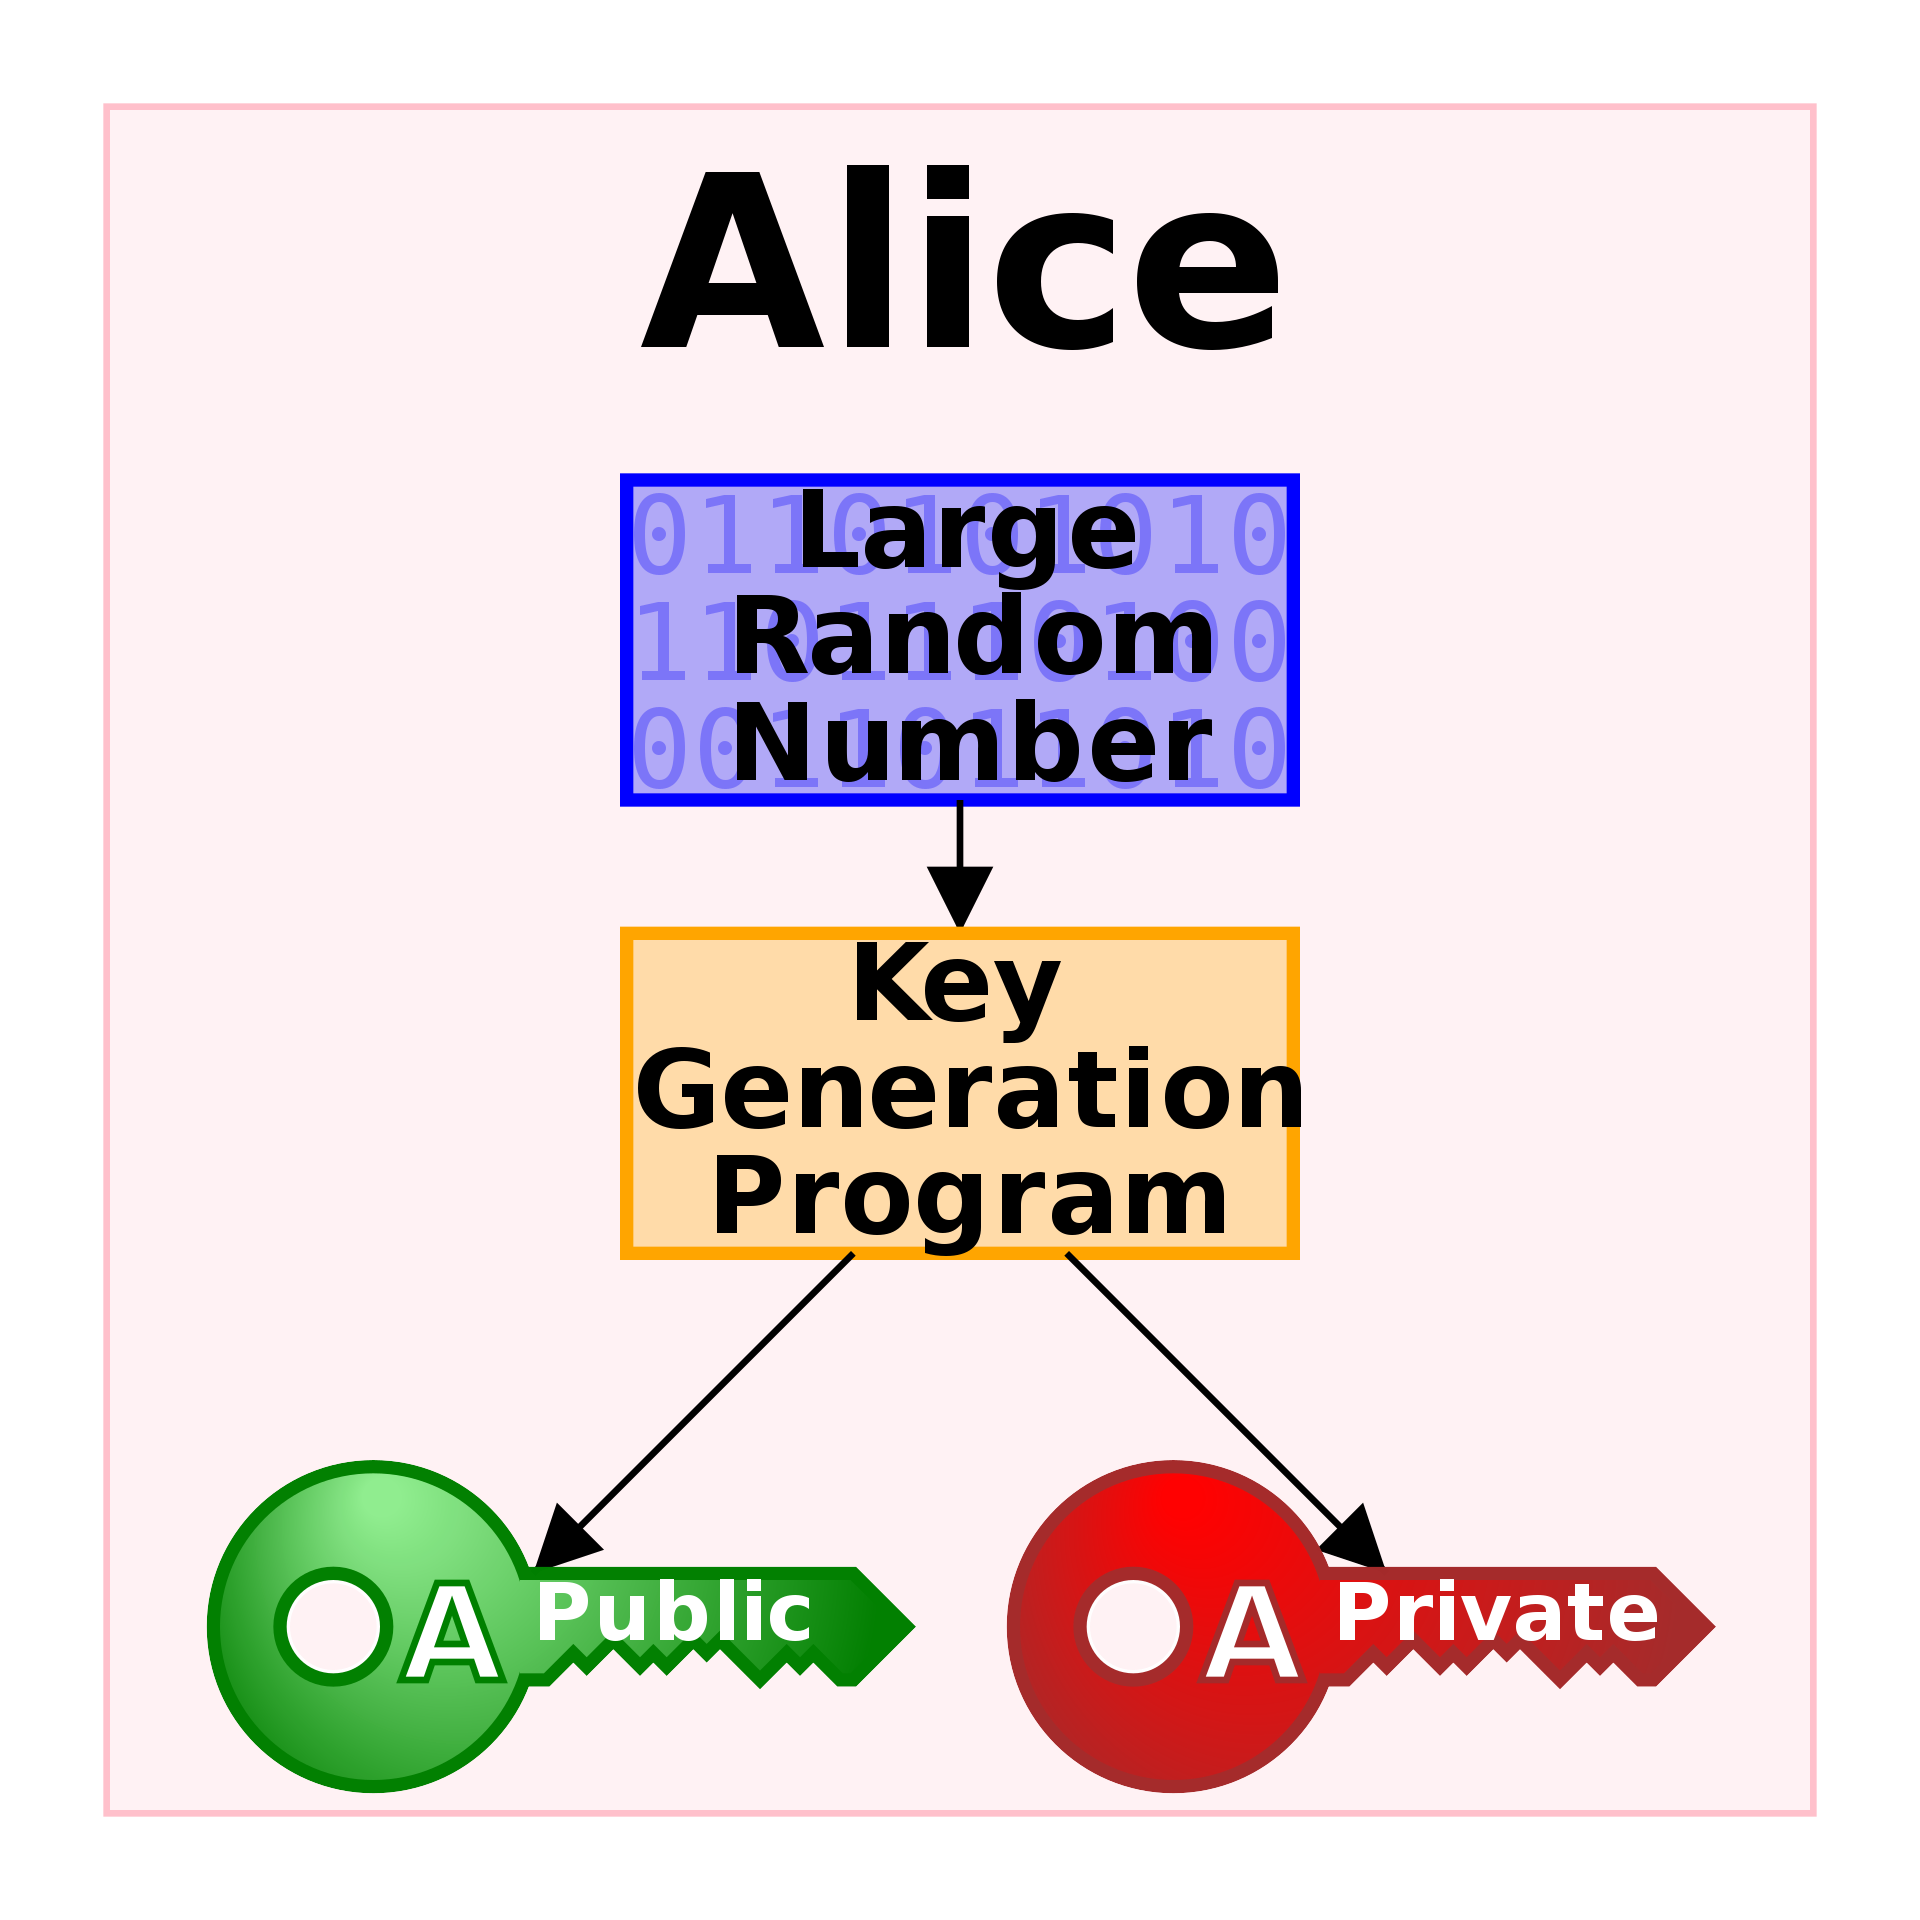 Public key systems that generate random public keys work